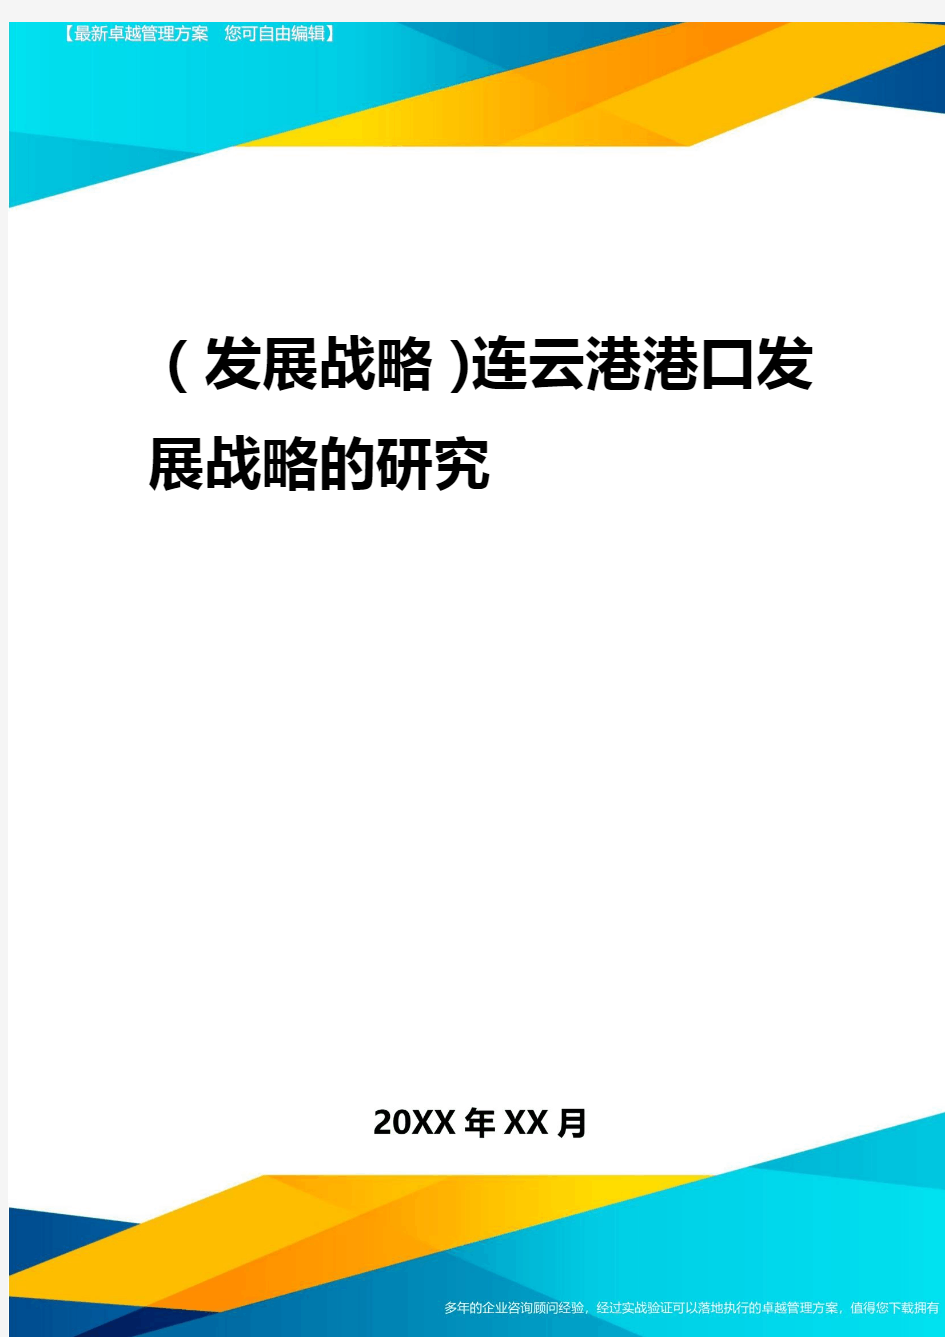 2020年(发展战略)连云港港口发展战略的研究